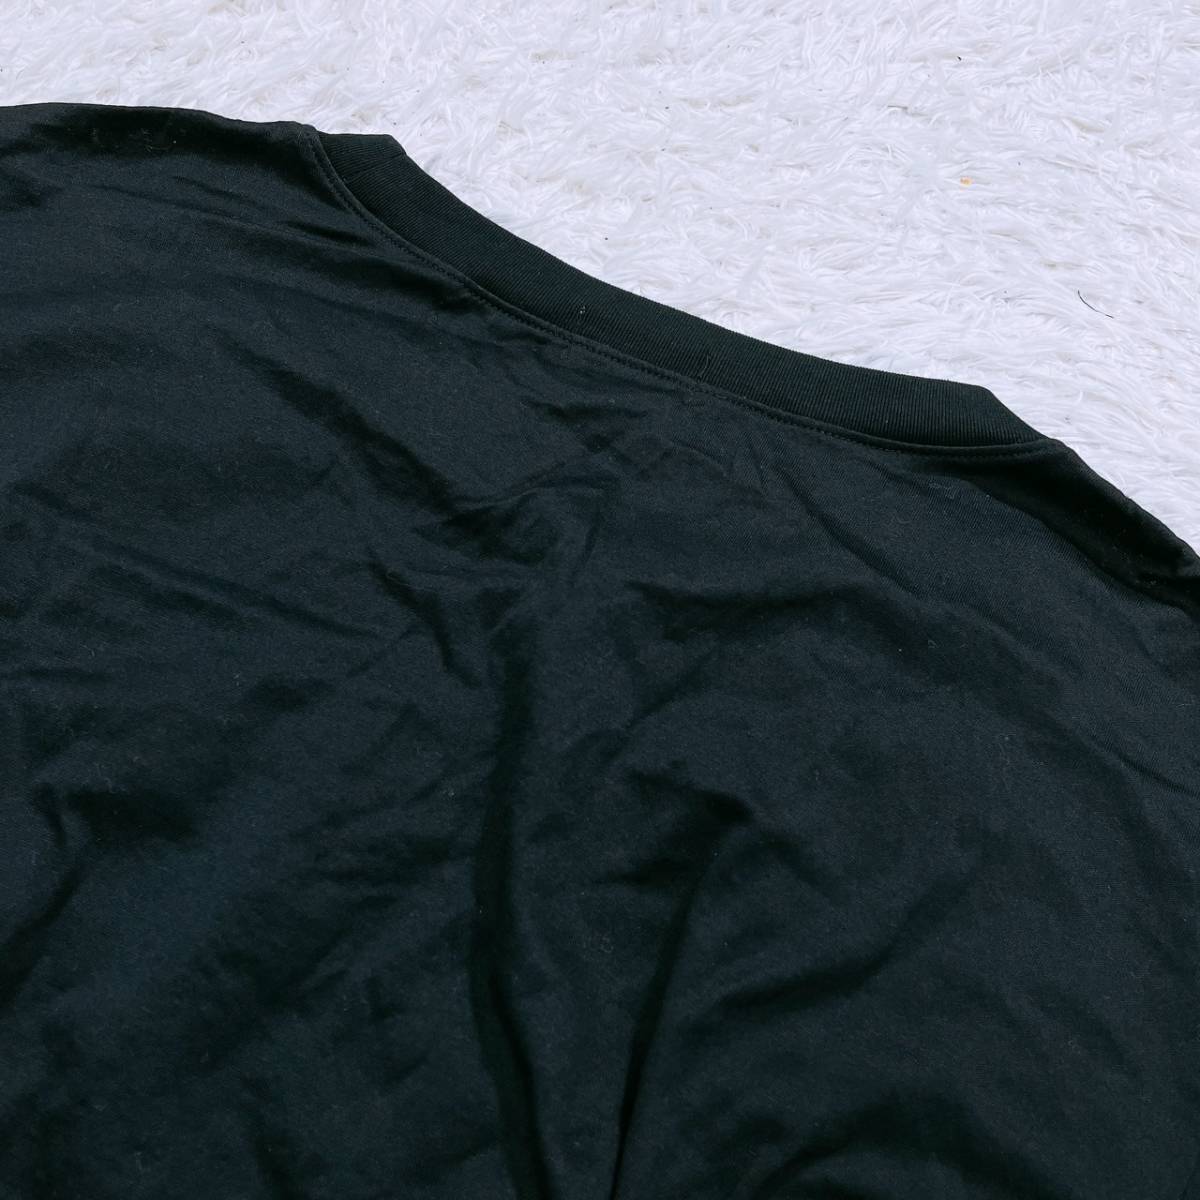 美品 メンズM-L相当 TRUSSARDI トップス シャツ Tシャツ 半袖Tシャツ ブラック 黒 丸ネック ロゴプリント トラサルディ 【15406】